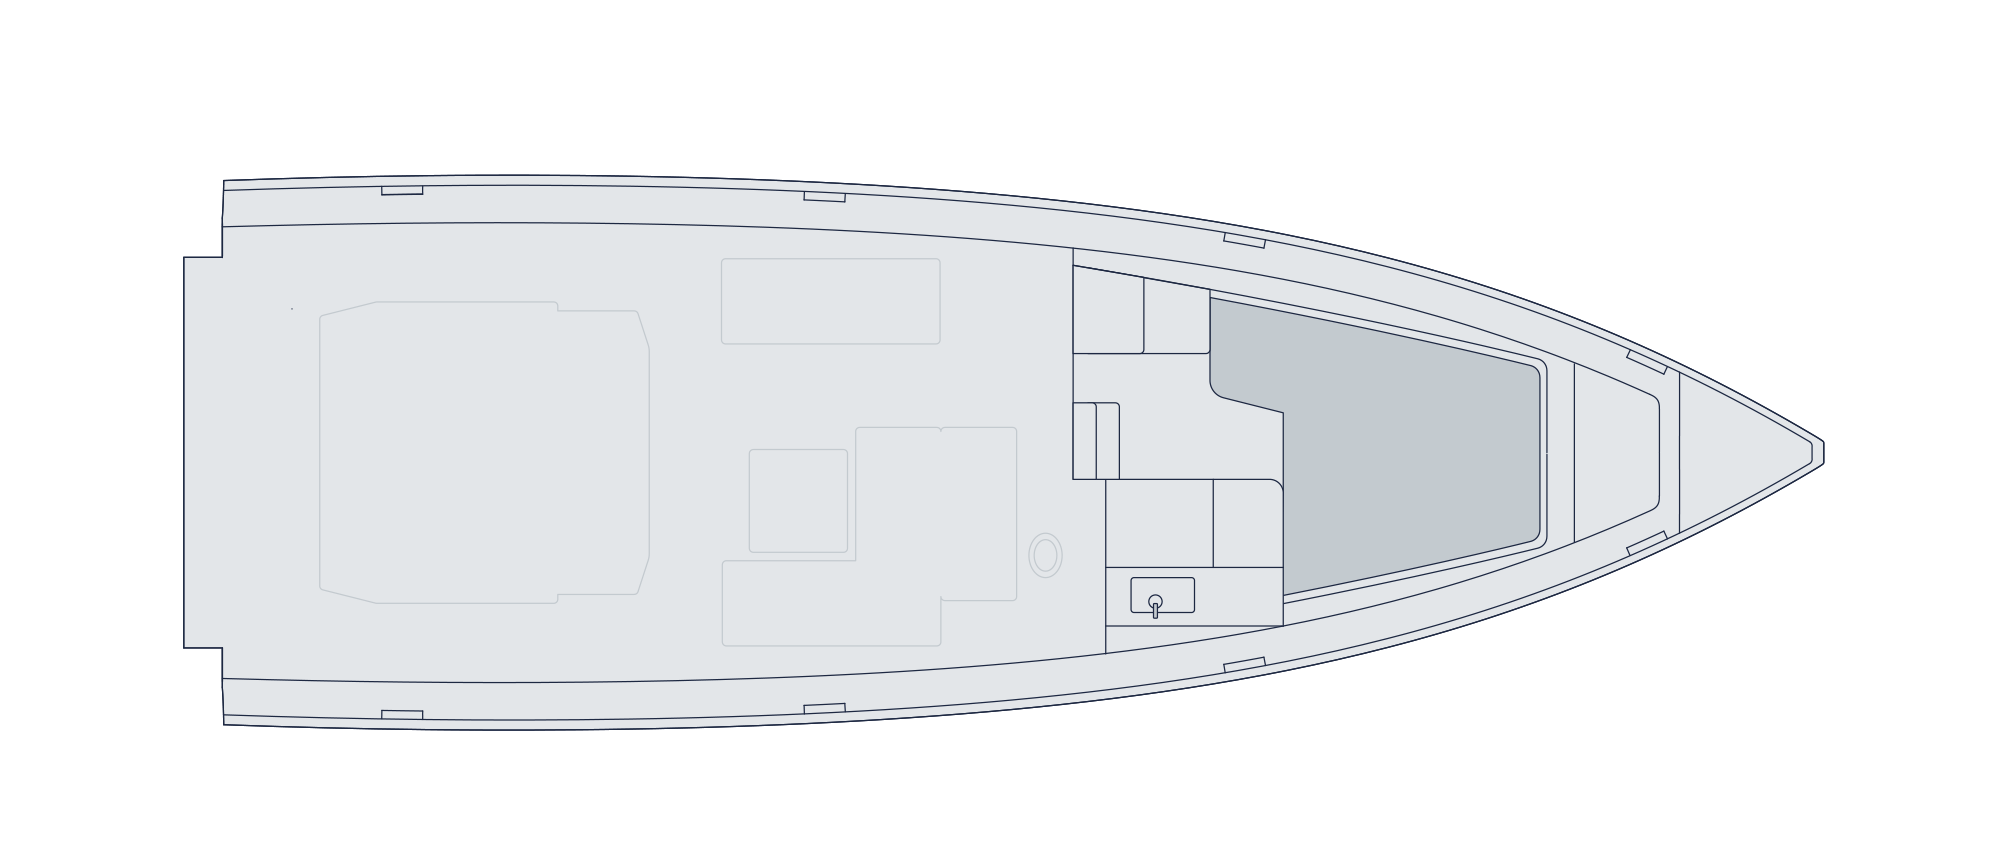 swan yacht club boat storage